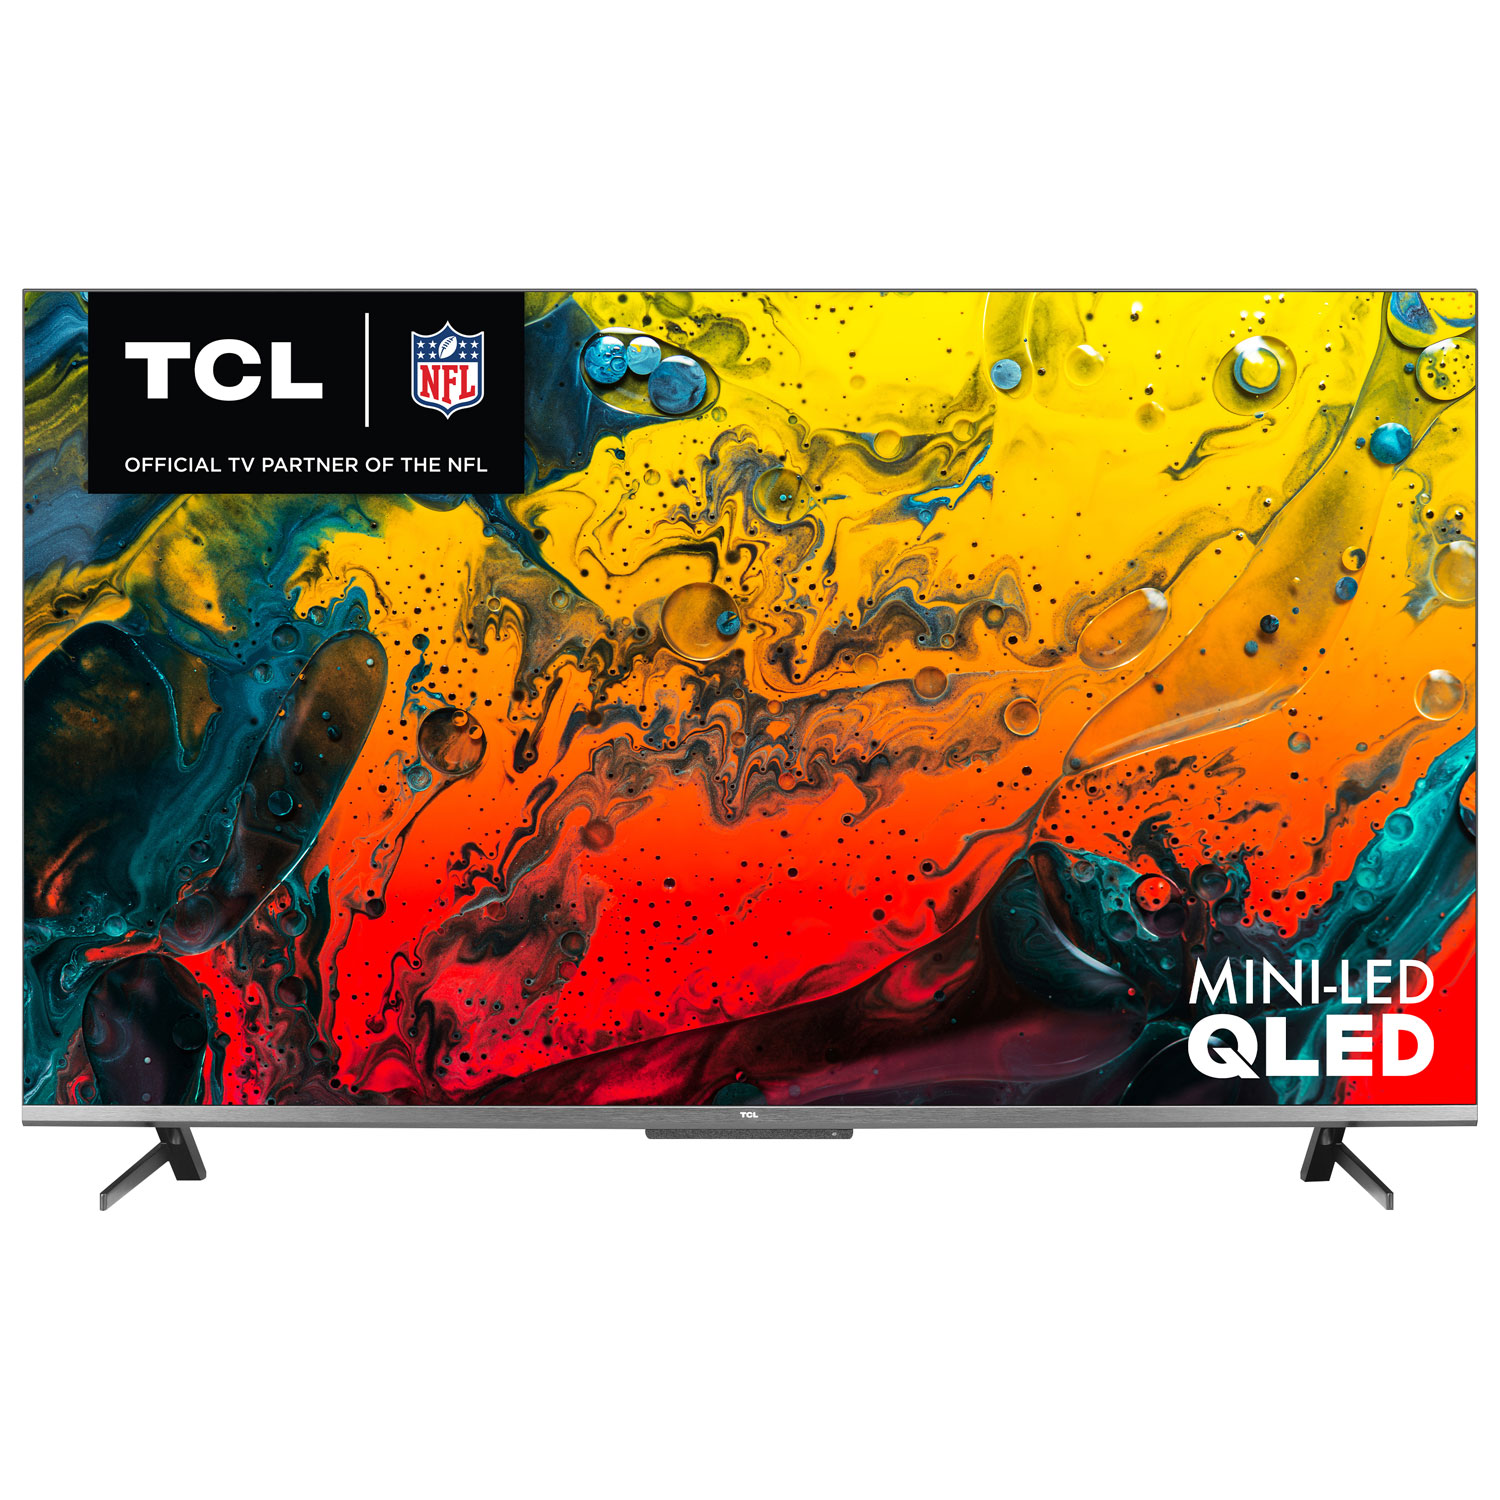 TCL 6-Series 55" 4K UHD HDR QLED Mini-LED Smart Google TV (55R646-CA) - 2021